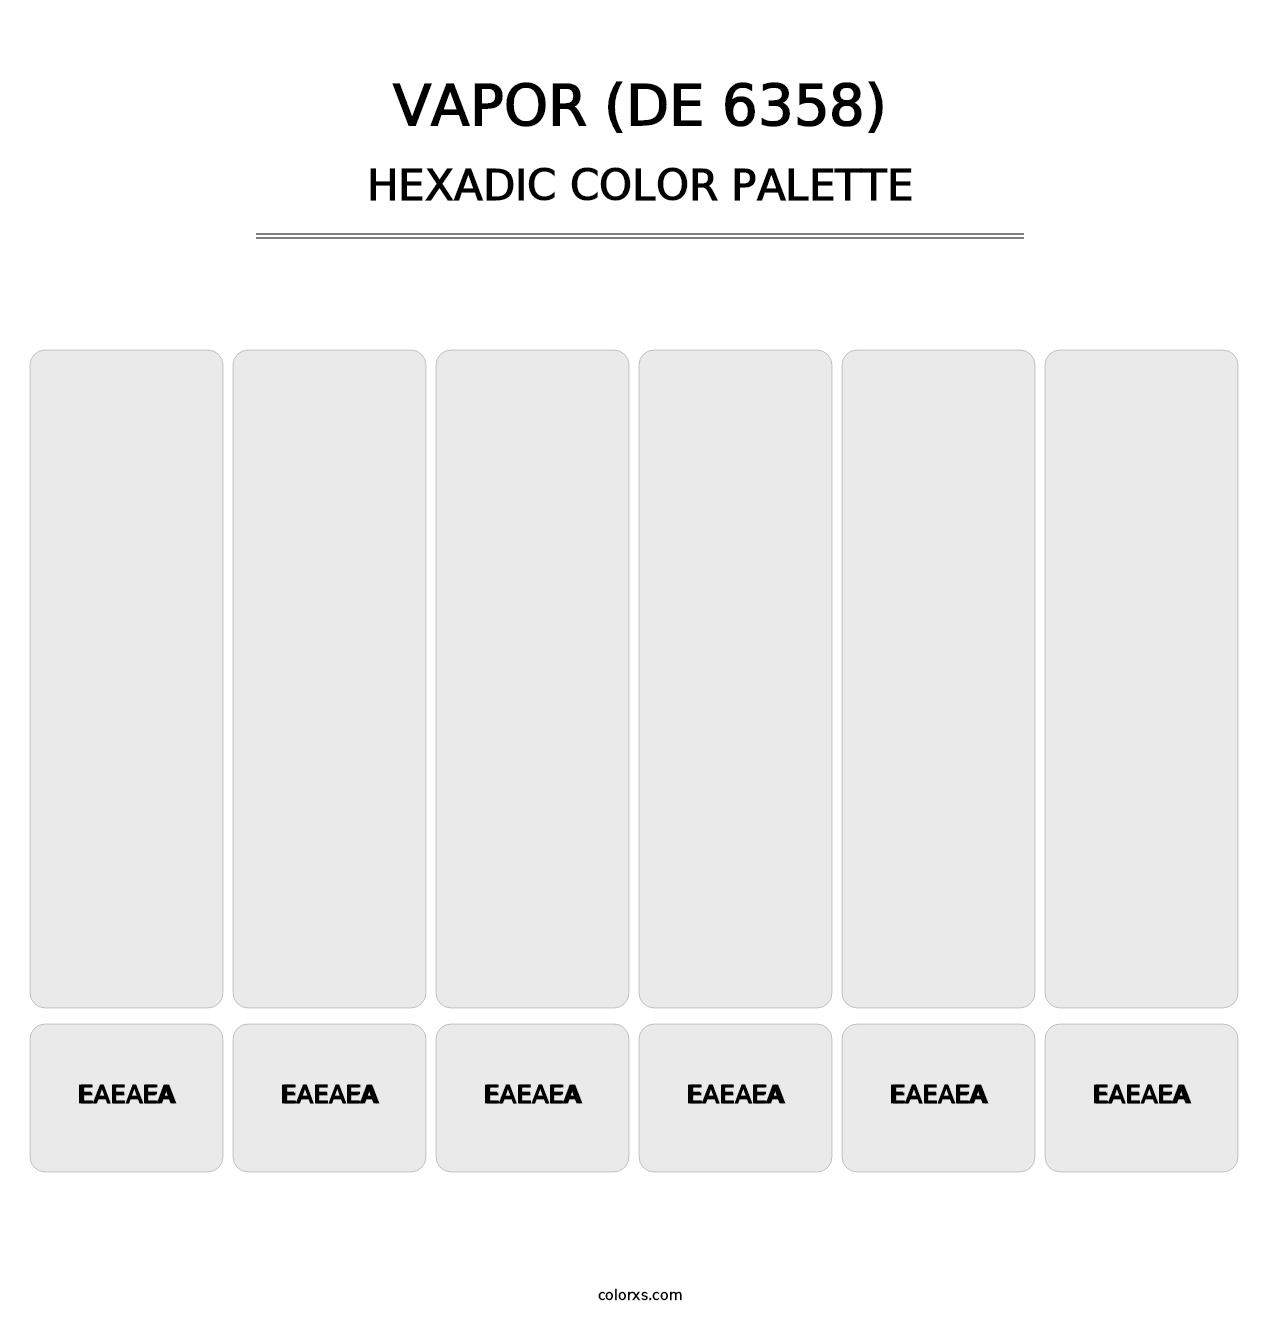 Vapor (DE 6358) - Hexadic Color Palette